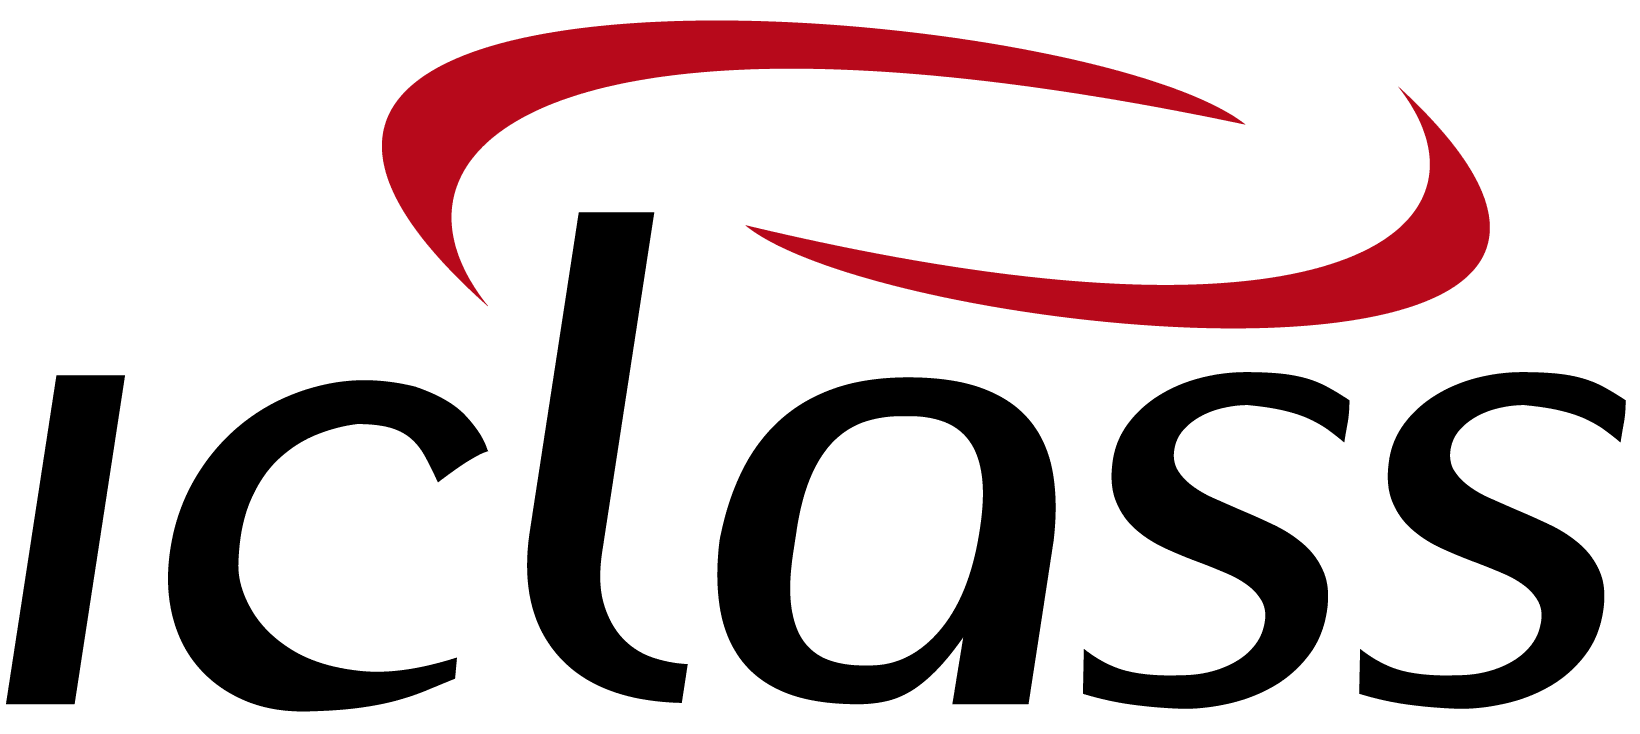 logo IClass Software de Ordem de Serviço Online Utilities